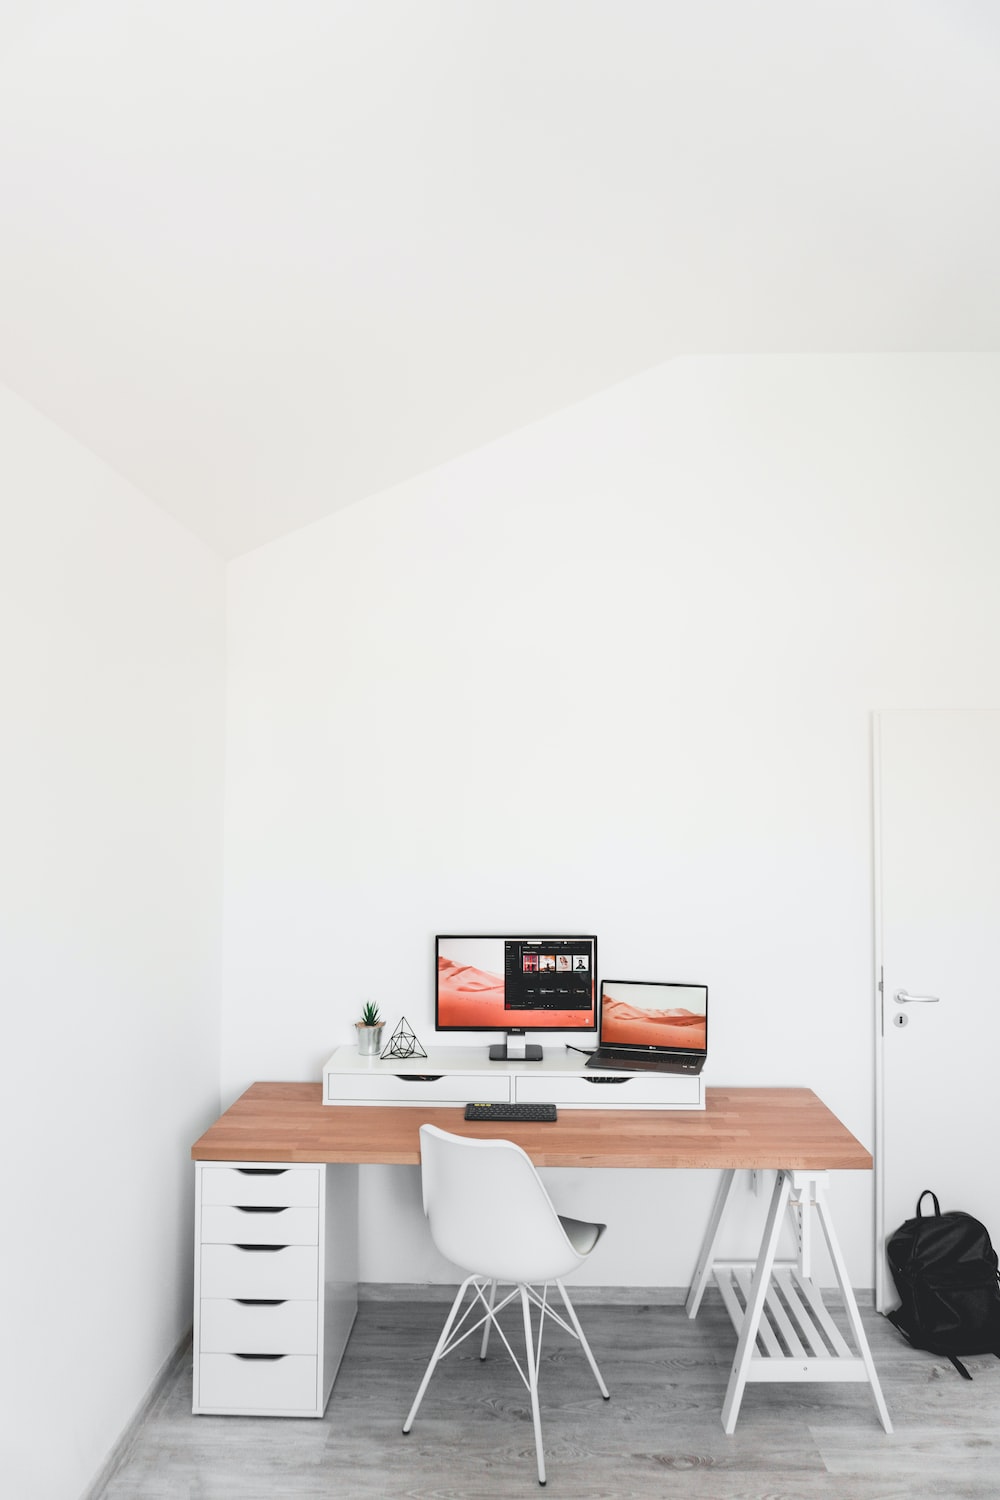 Do corner desks save space?